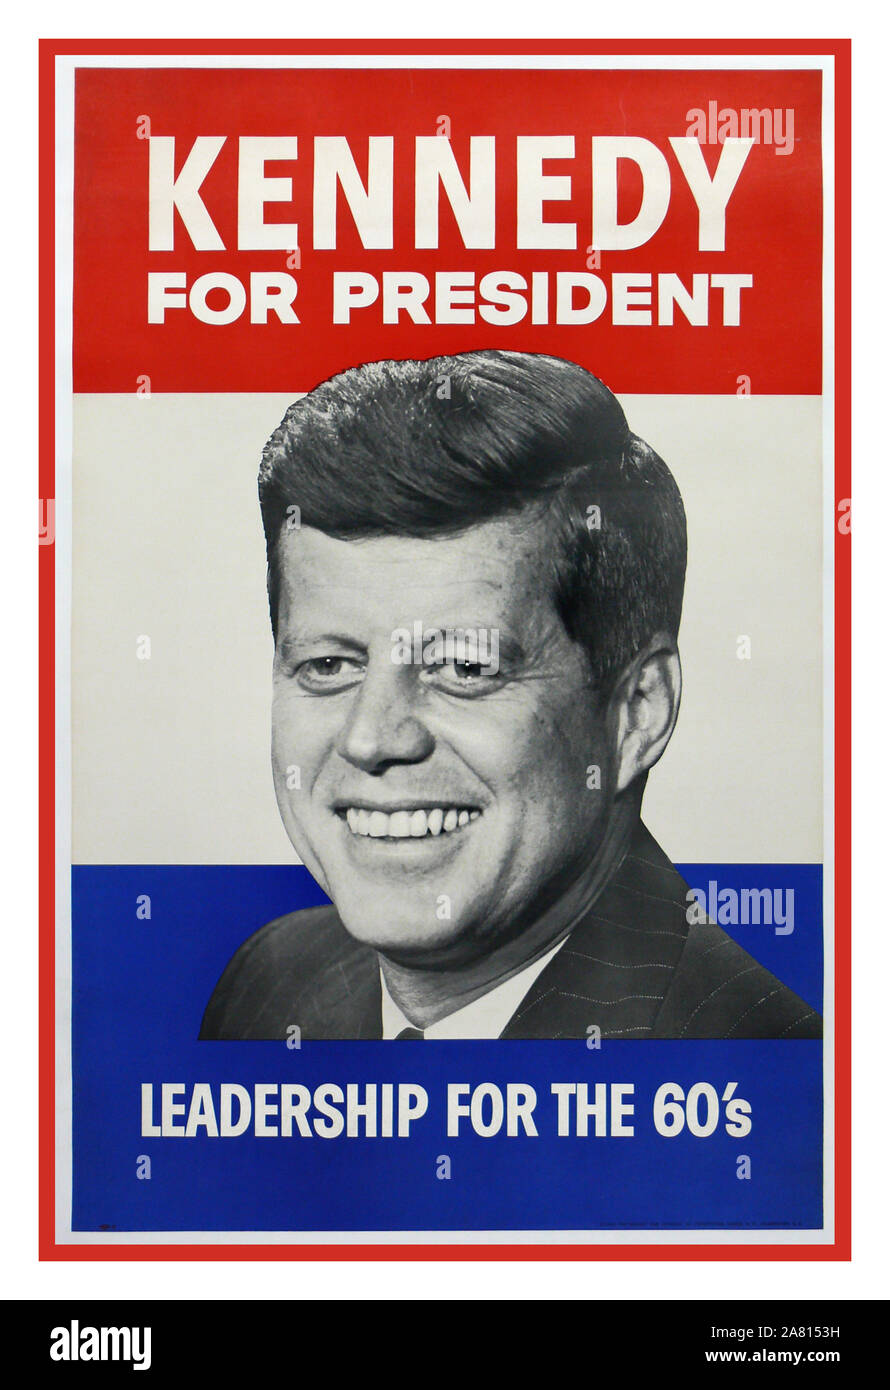 KENNEDY JFK Vintage Election poster USA 1960 John F. Kennedy 1960 Presidential Campaign Poster....'Kennedy pour la direction du Président pour les années 60 l'inauguration de John F Kennedy a eu lieu le 20 janvier 1961, sur la façade est récemment rénovée du Capitole des États-Unis, John Fitzgerald Kennedy a été inauguré en tant que 35e président des États-Unis. Banque D'Images